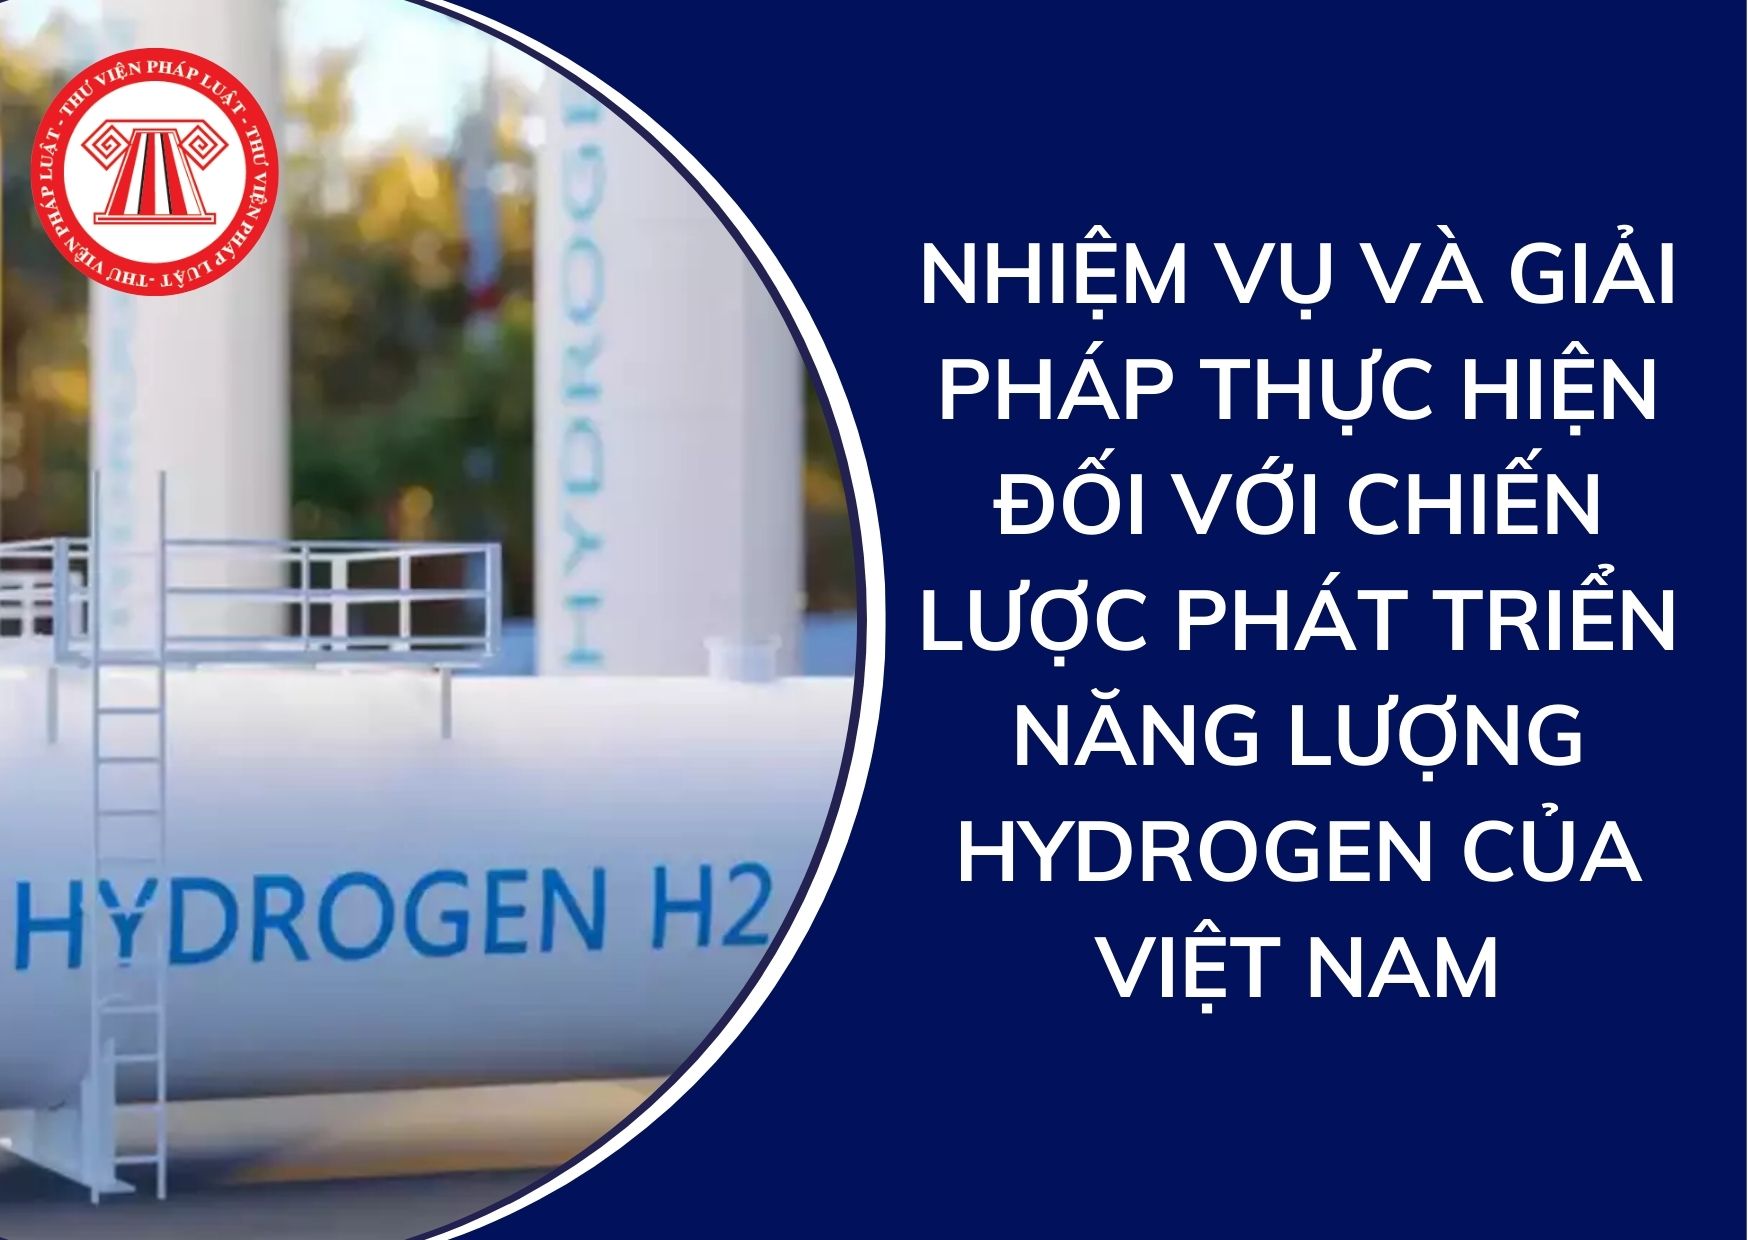 7 nhiệm vụ và giải pháp thực hiện đối với Chiến lược phát triển năng lượng hydrogen của Việt Nam là gì?